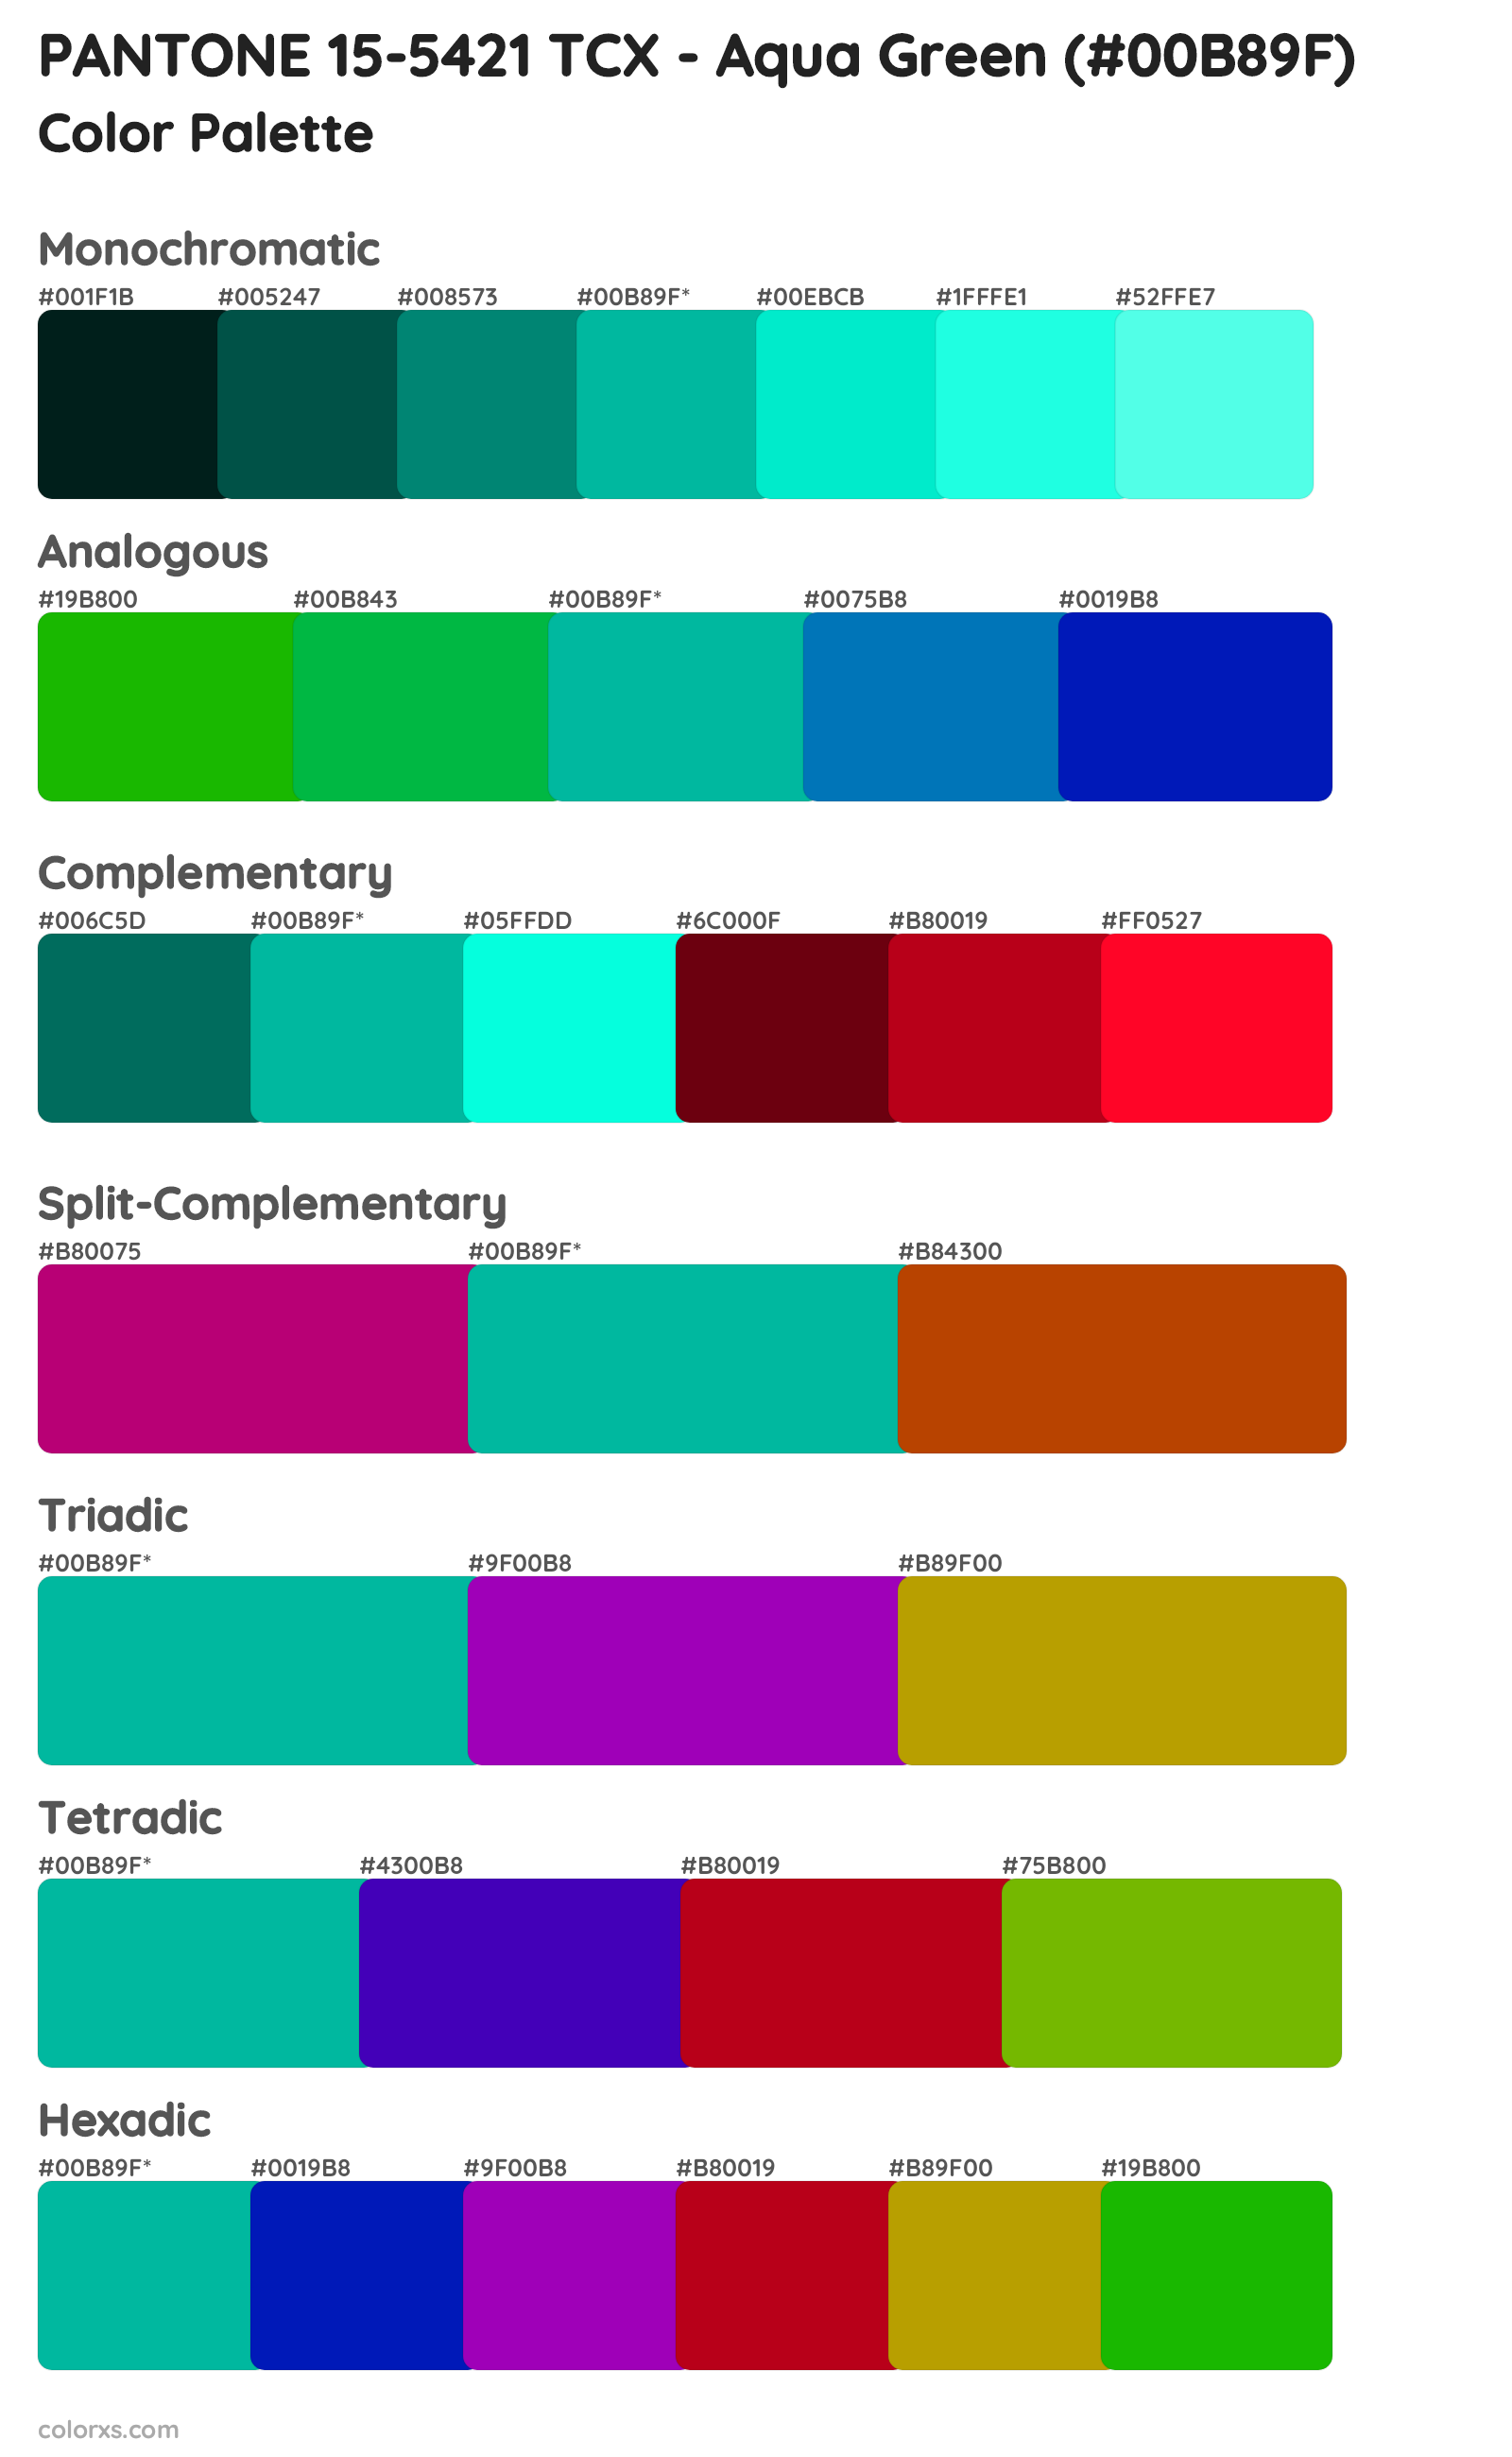 PANTONE 15-5421 TCX - Aqua Green Color Scheme Palettes